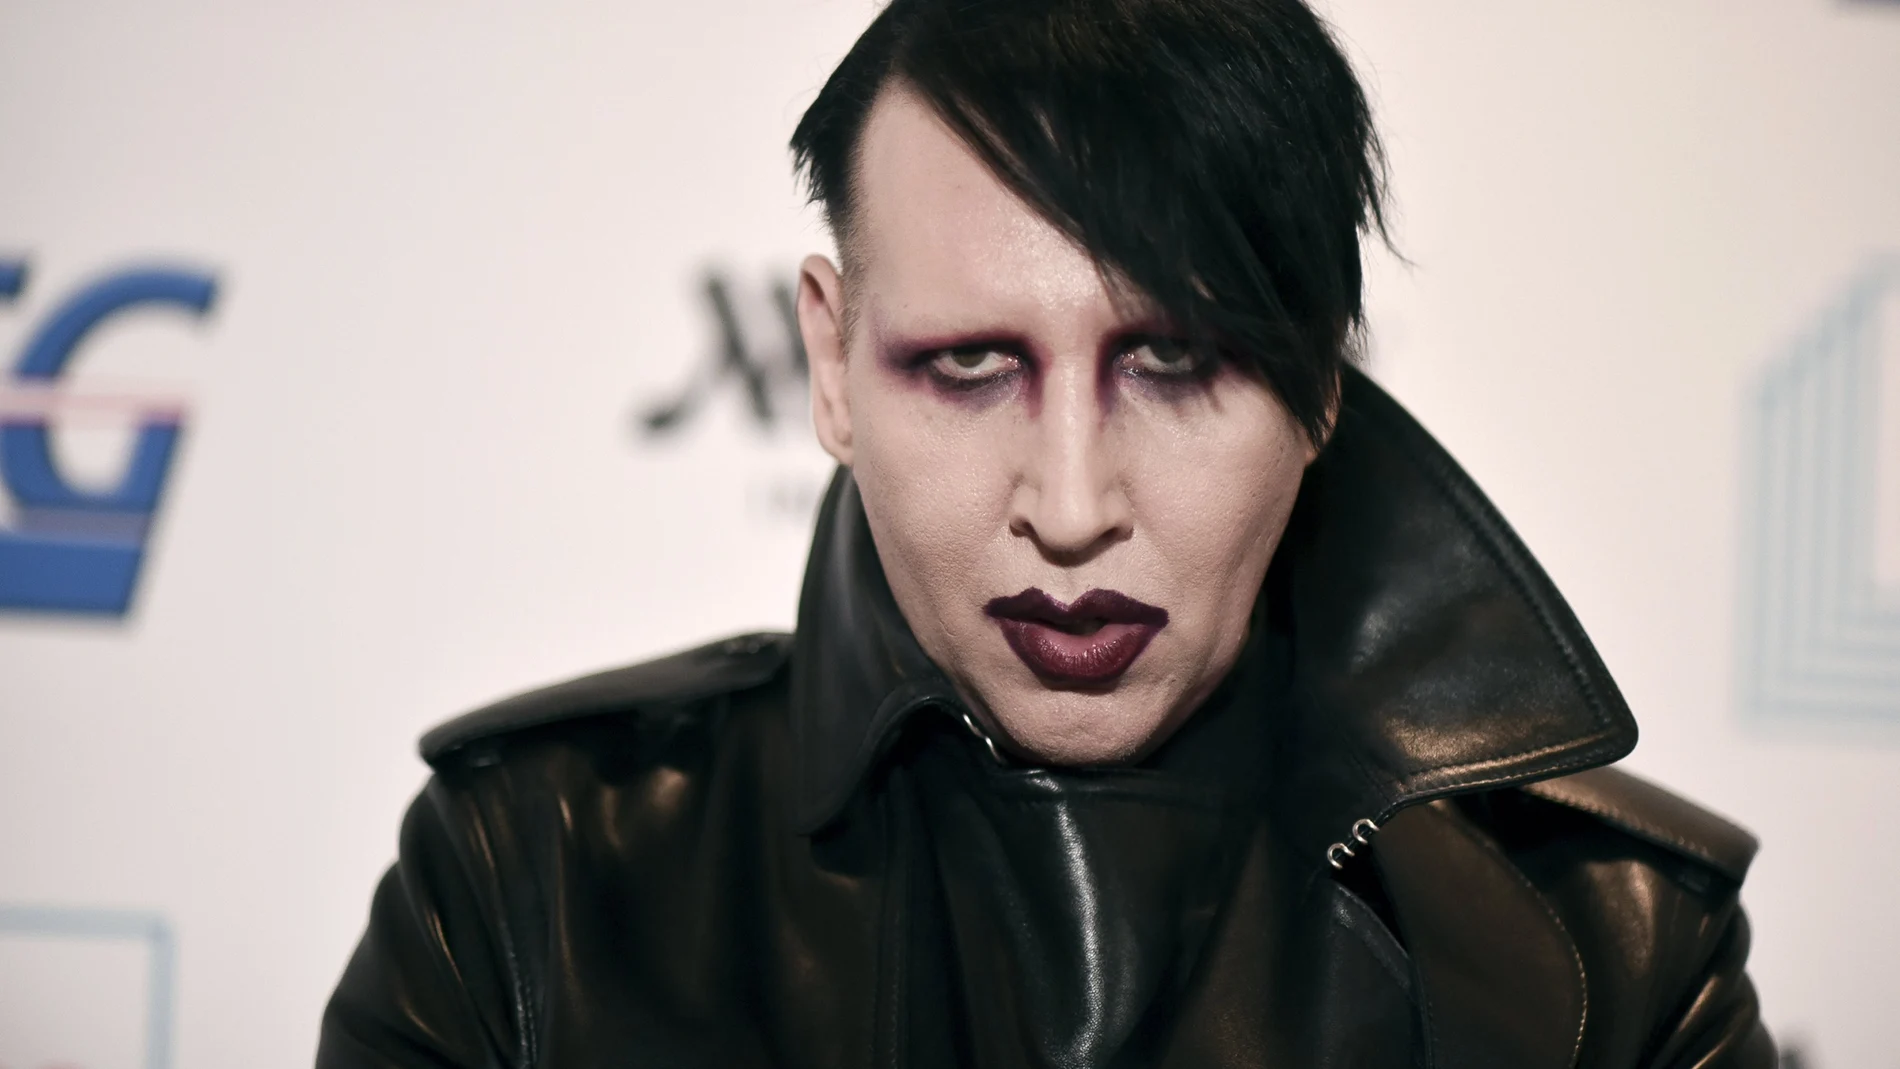 El músico Marilyn Manson ha sido acusado de abusos sexuales por su ex pareja, Rachel Wood